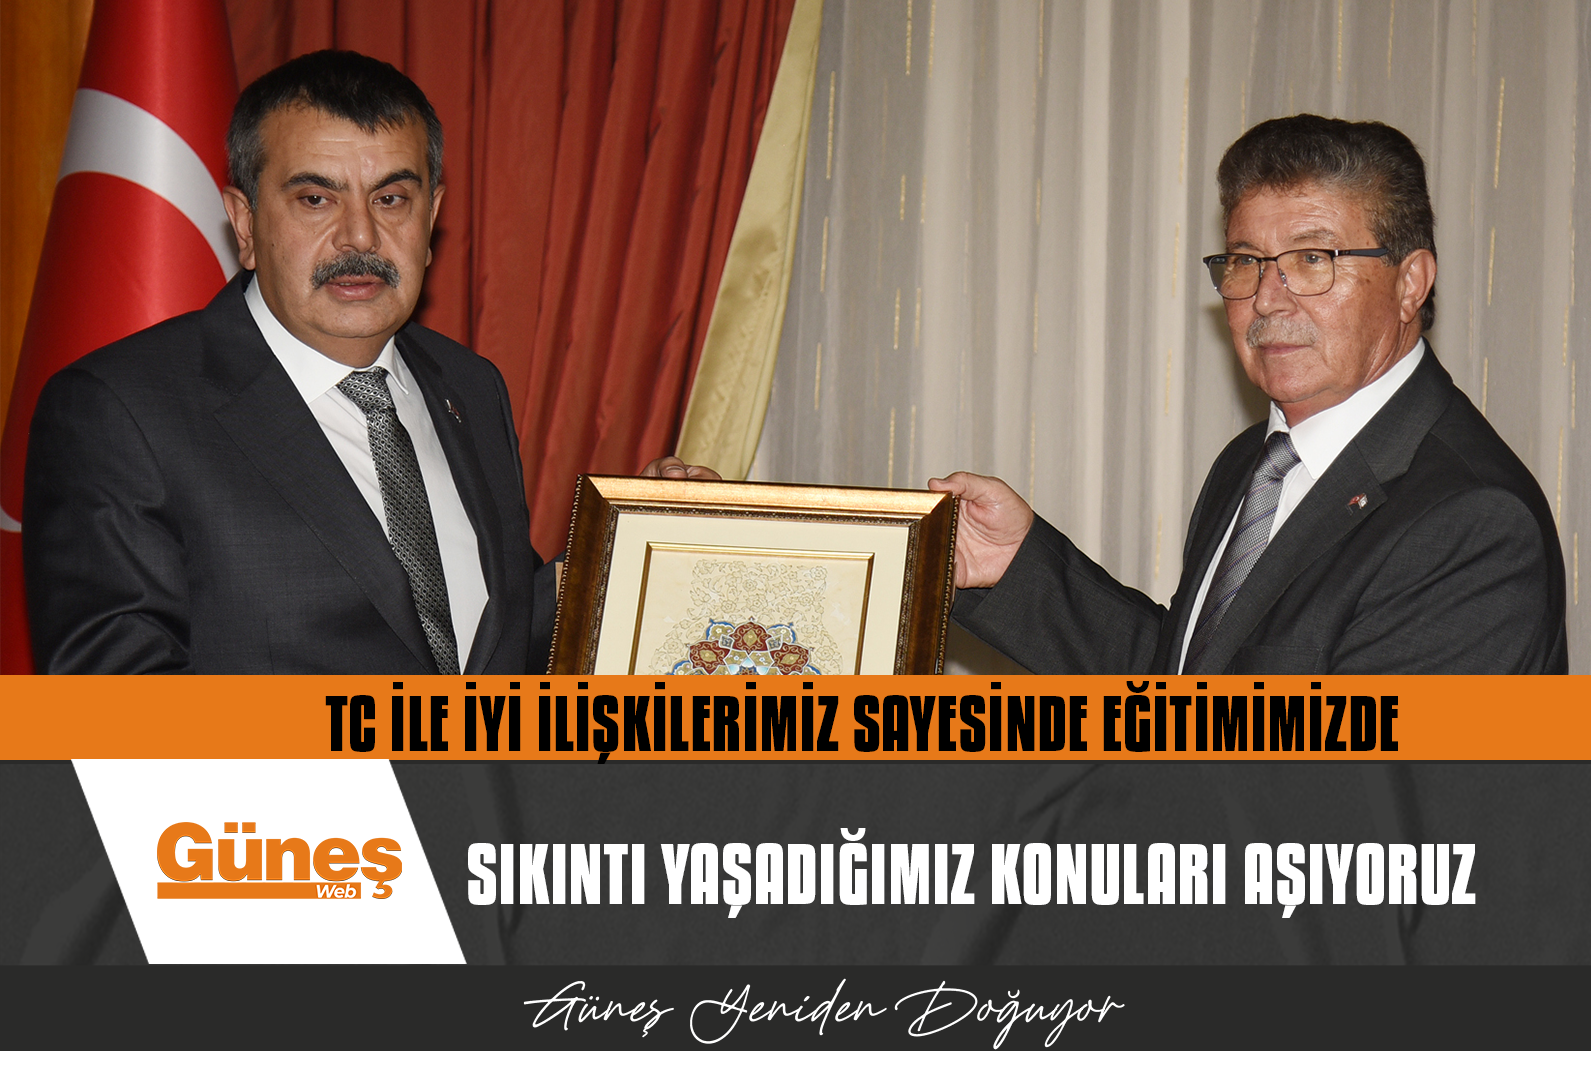 Başbakan Üstel, Türkiye Cumhuriyeti Milli Eğitim Bakanı Tekin’i kabul etti